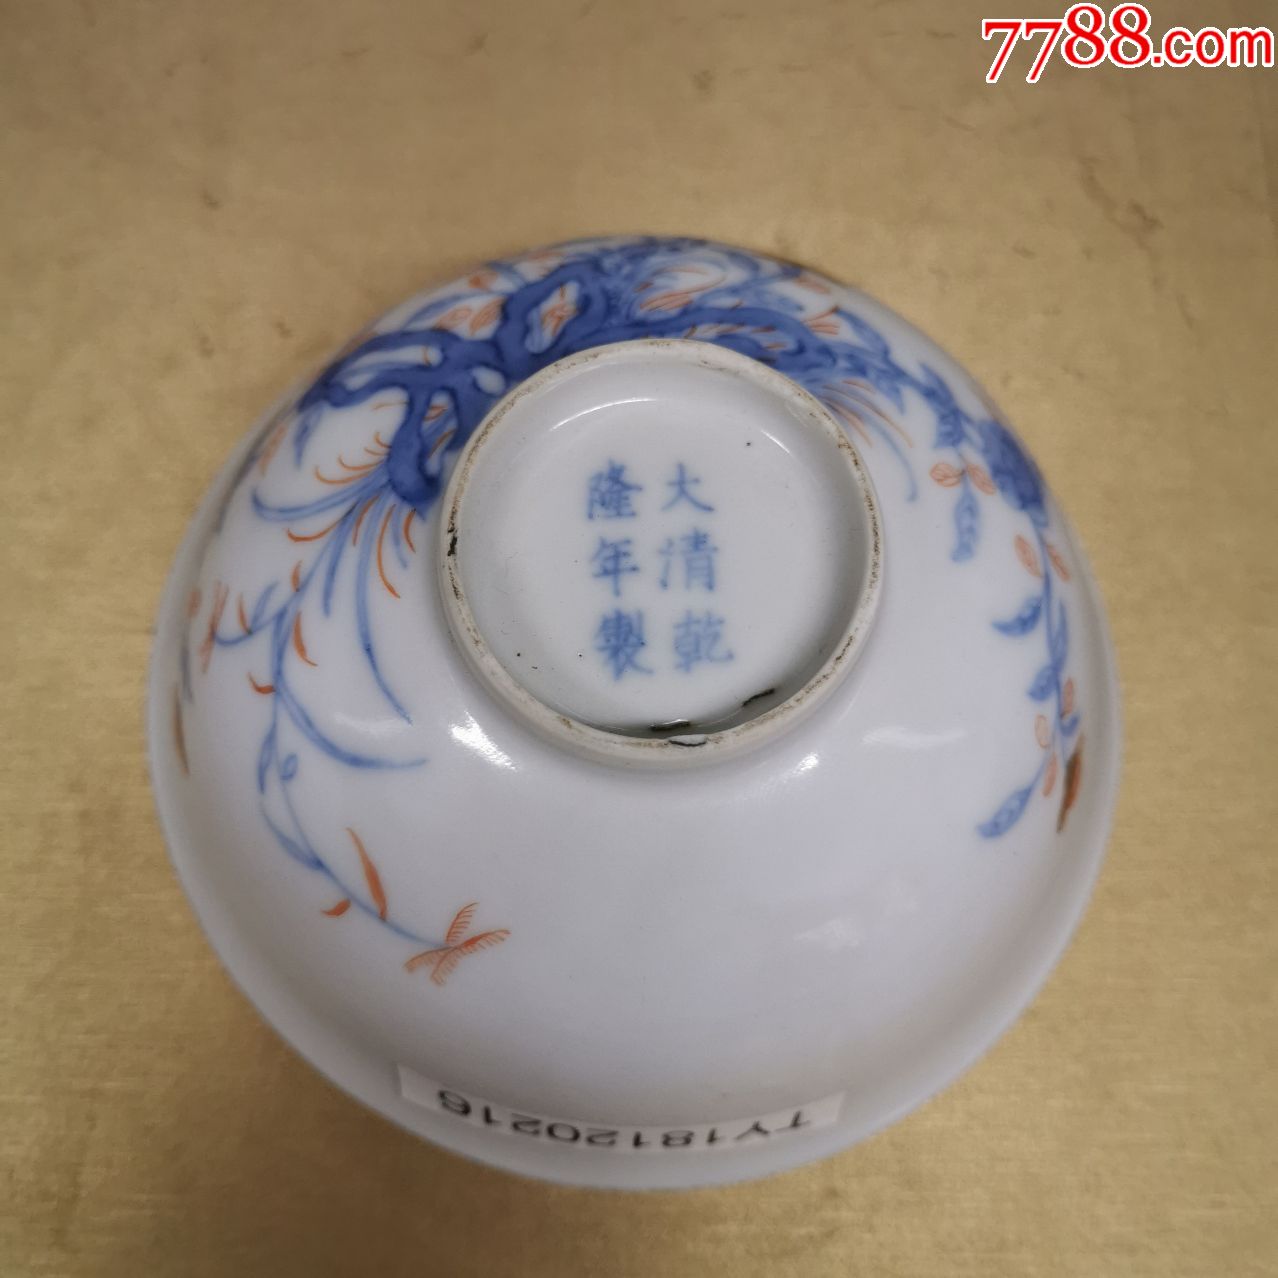 清代青花矾红花卉碗一对古玩老瓷器瓷碗收藏